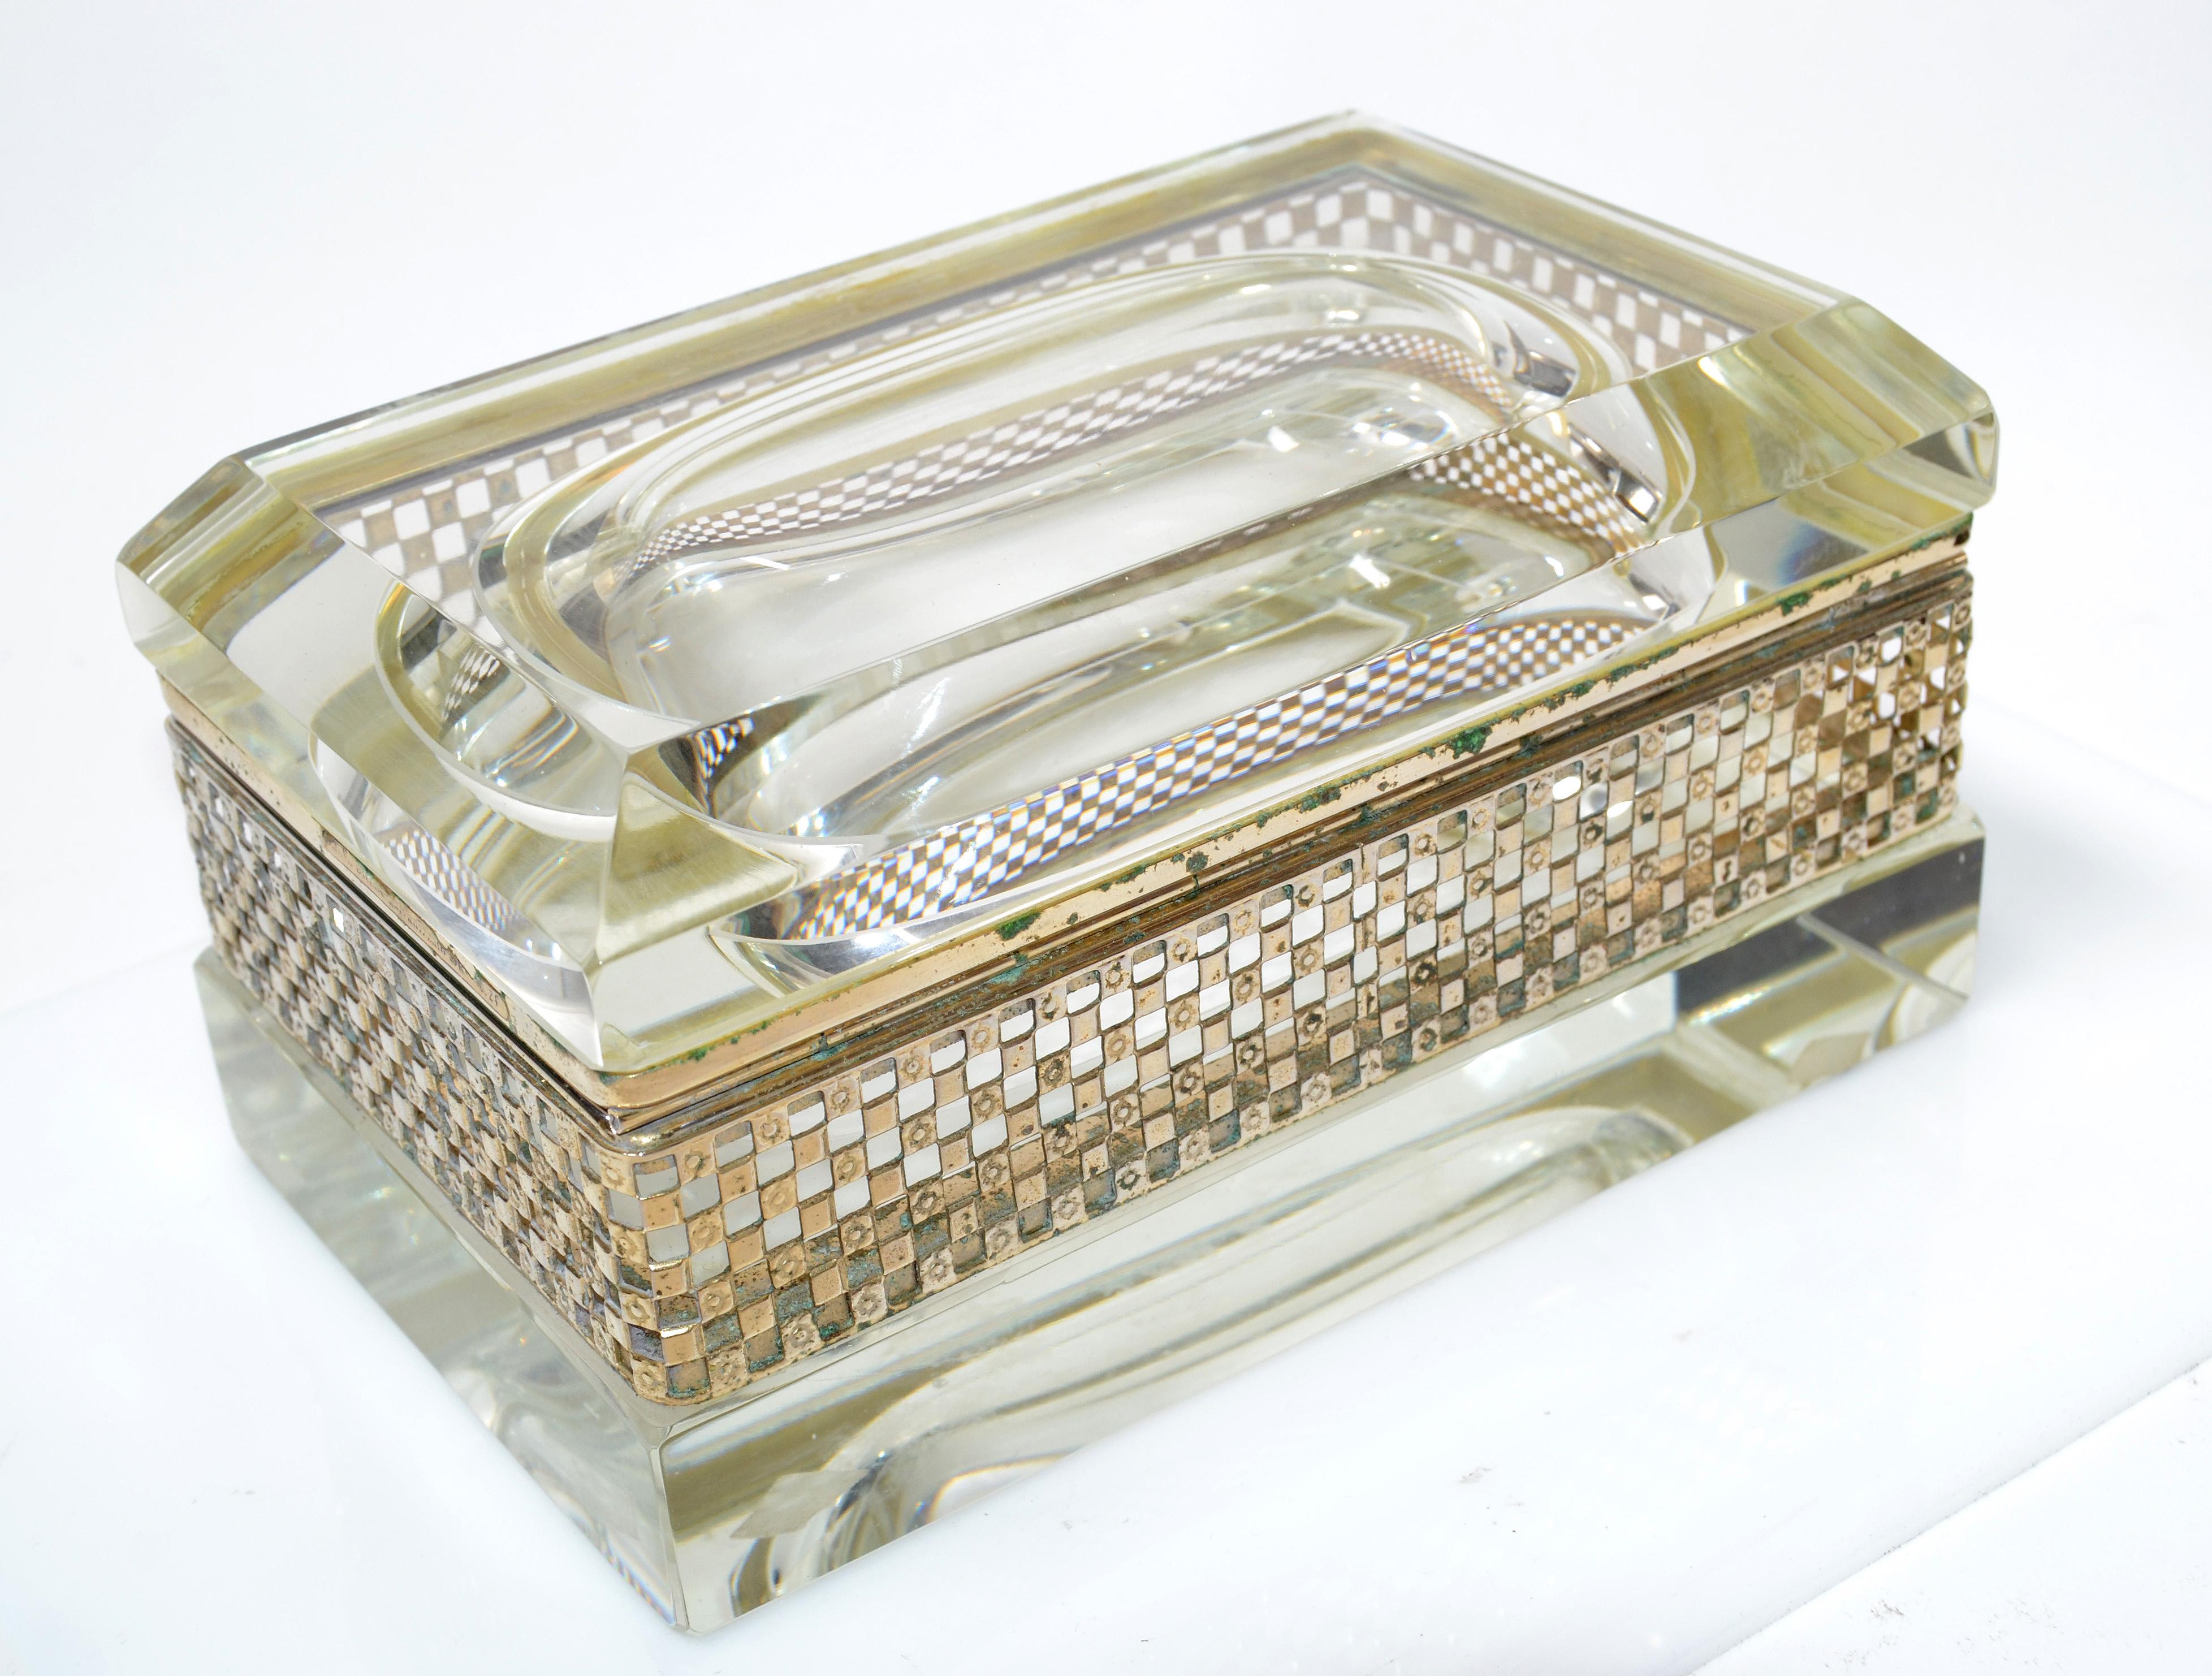 Art Deco Italian Murano Glass & 24k Gold Plate Jewelry Case Mandruzzato Style  For Sale 8